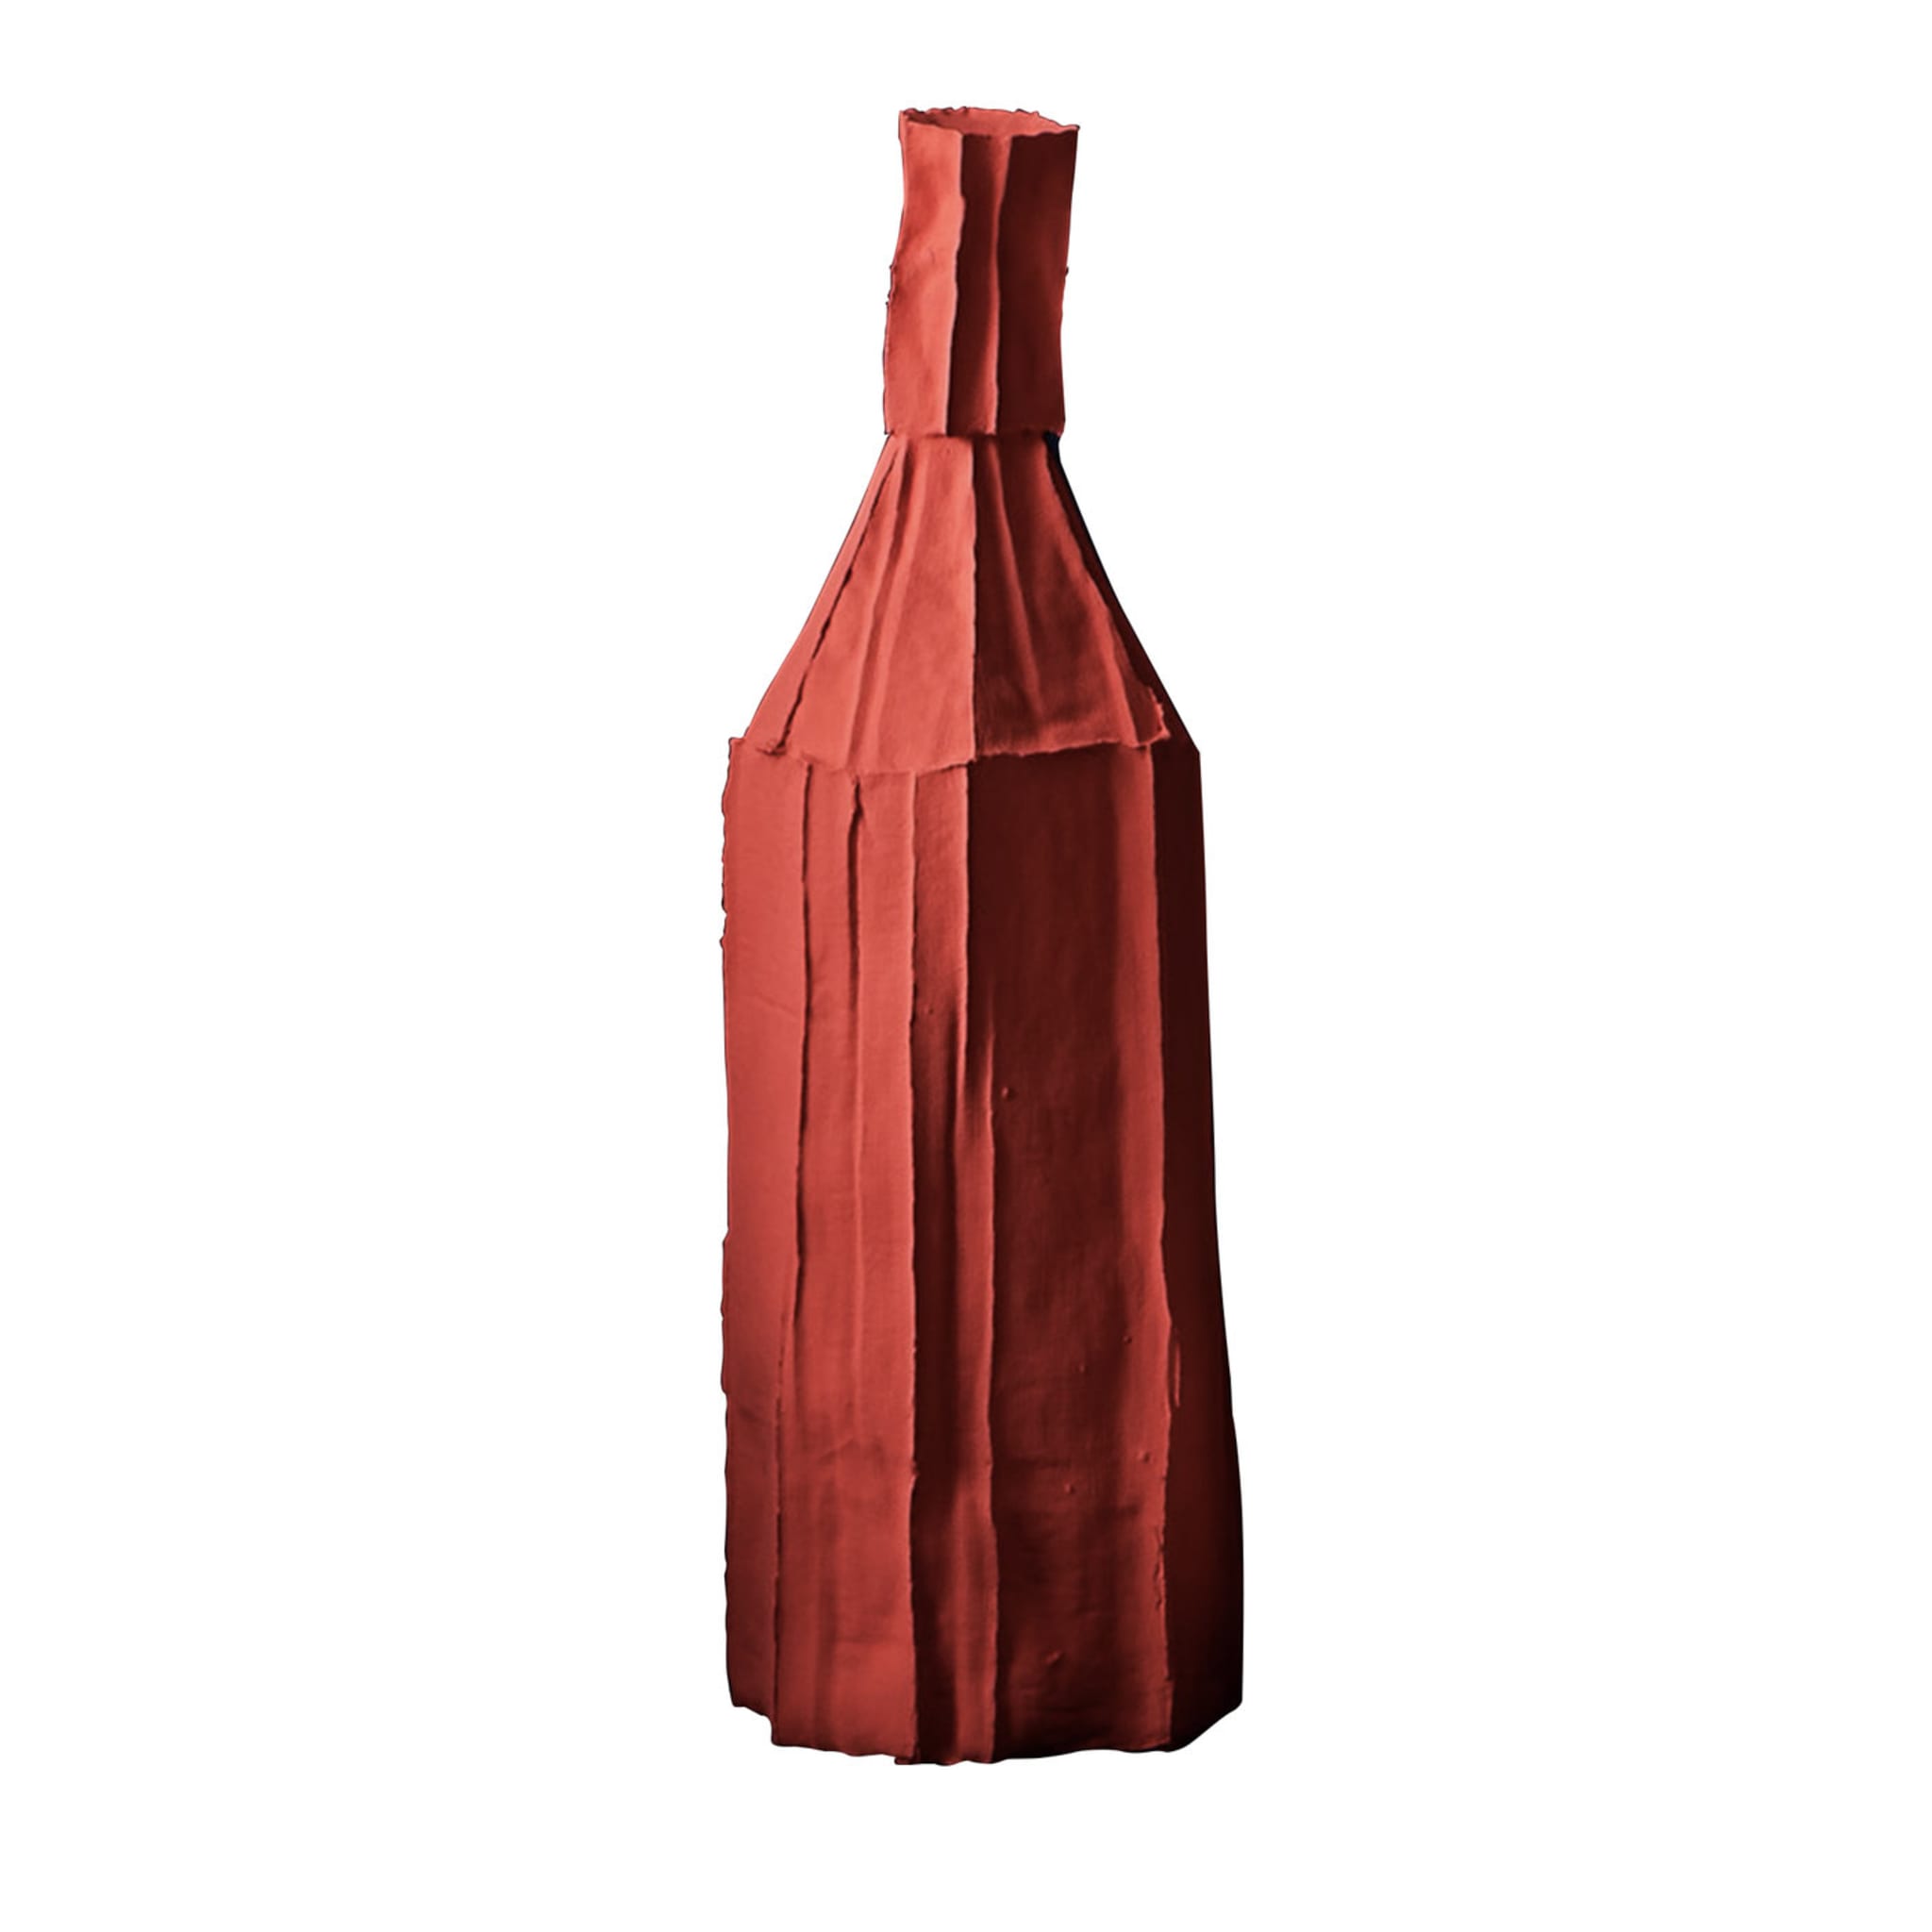 Cartocci Corteccia Botella decorativa roja - Vista principal